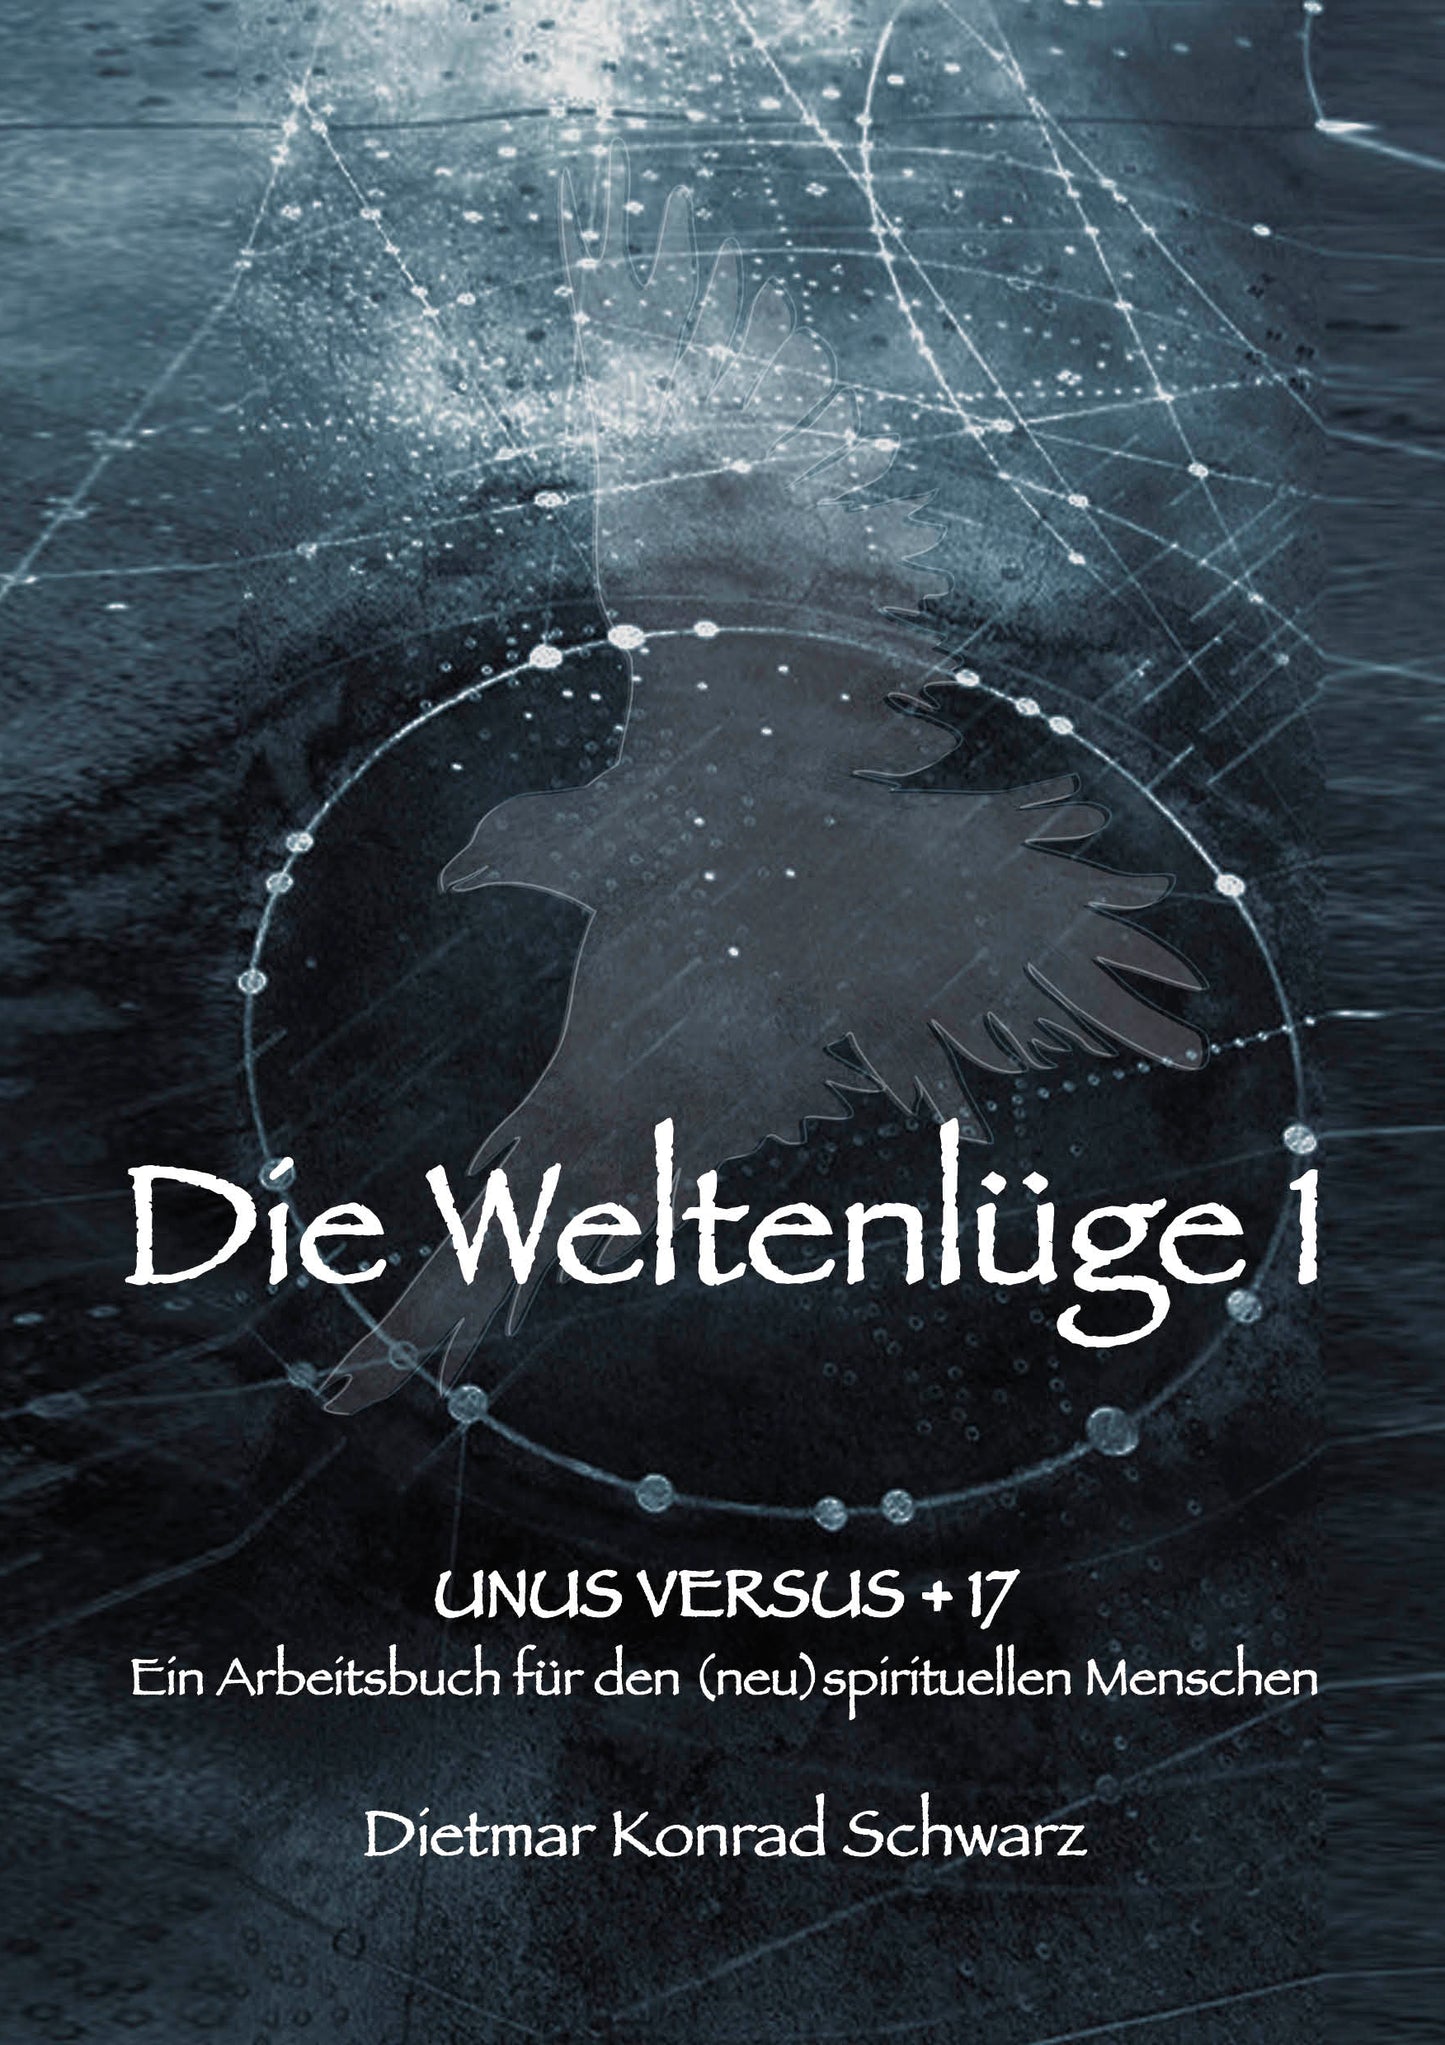 Main work "Die Weltenlüge 1" in the reading evening edition